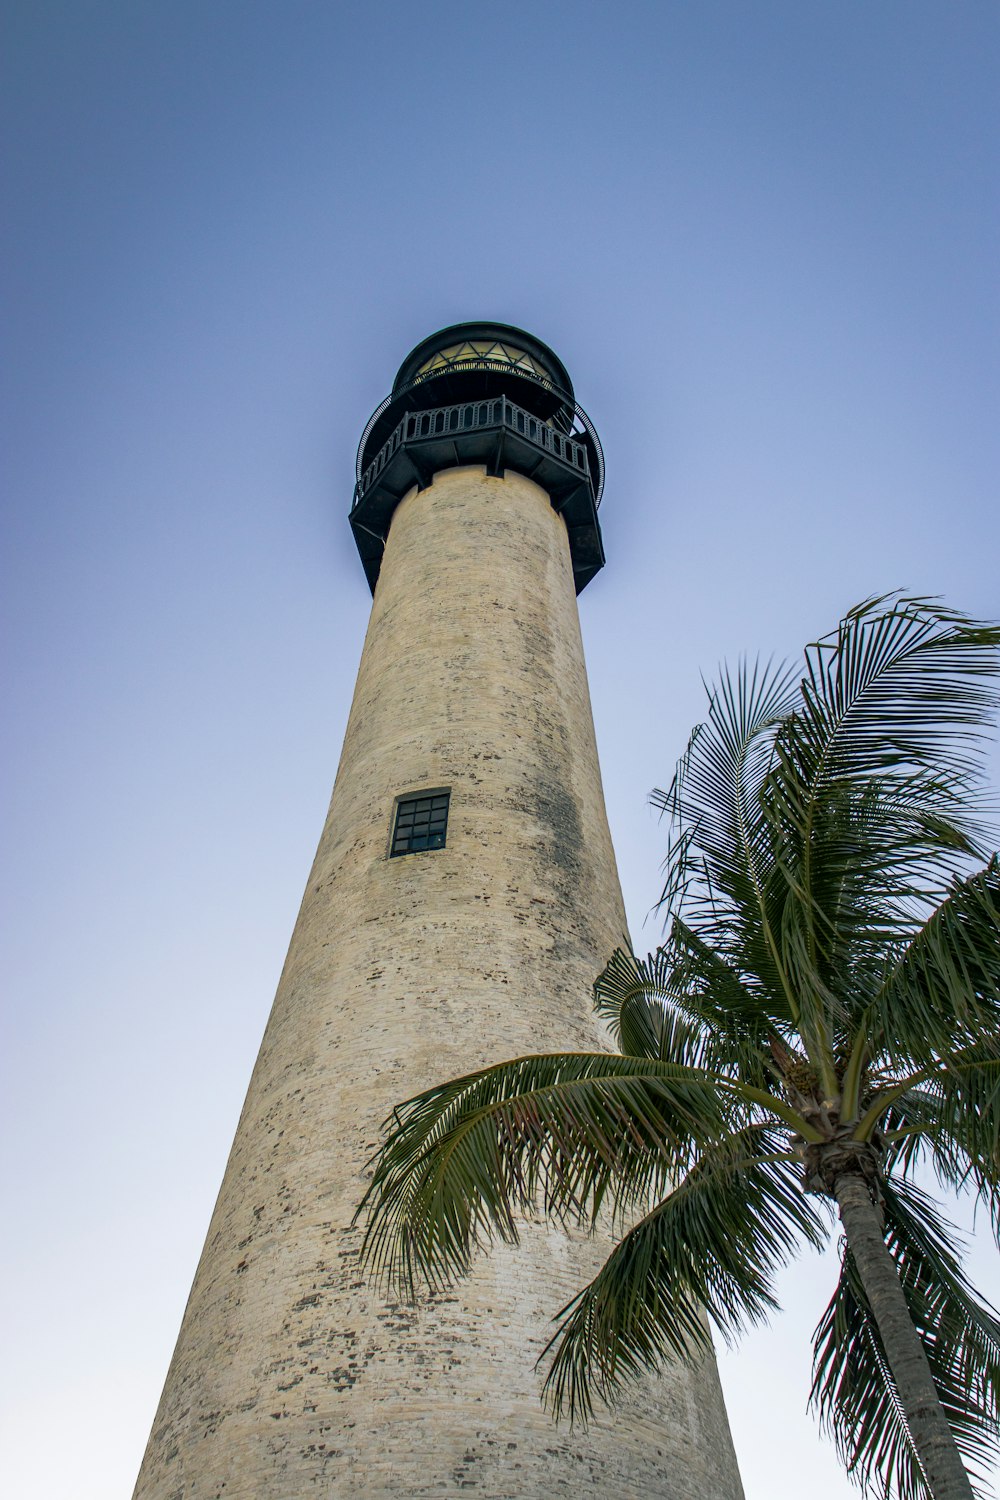 uma torre alta com um relógio no topo ao lado de uma palmeira